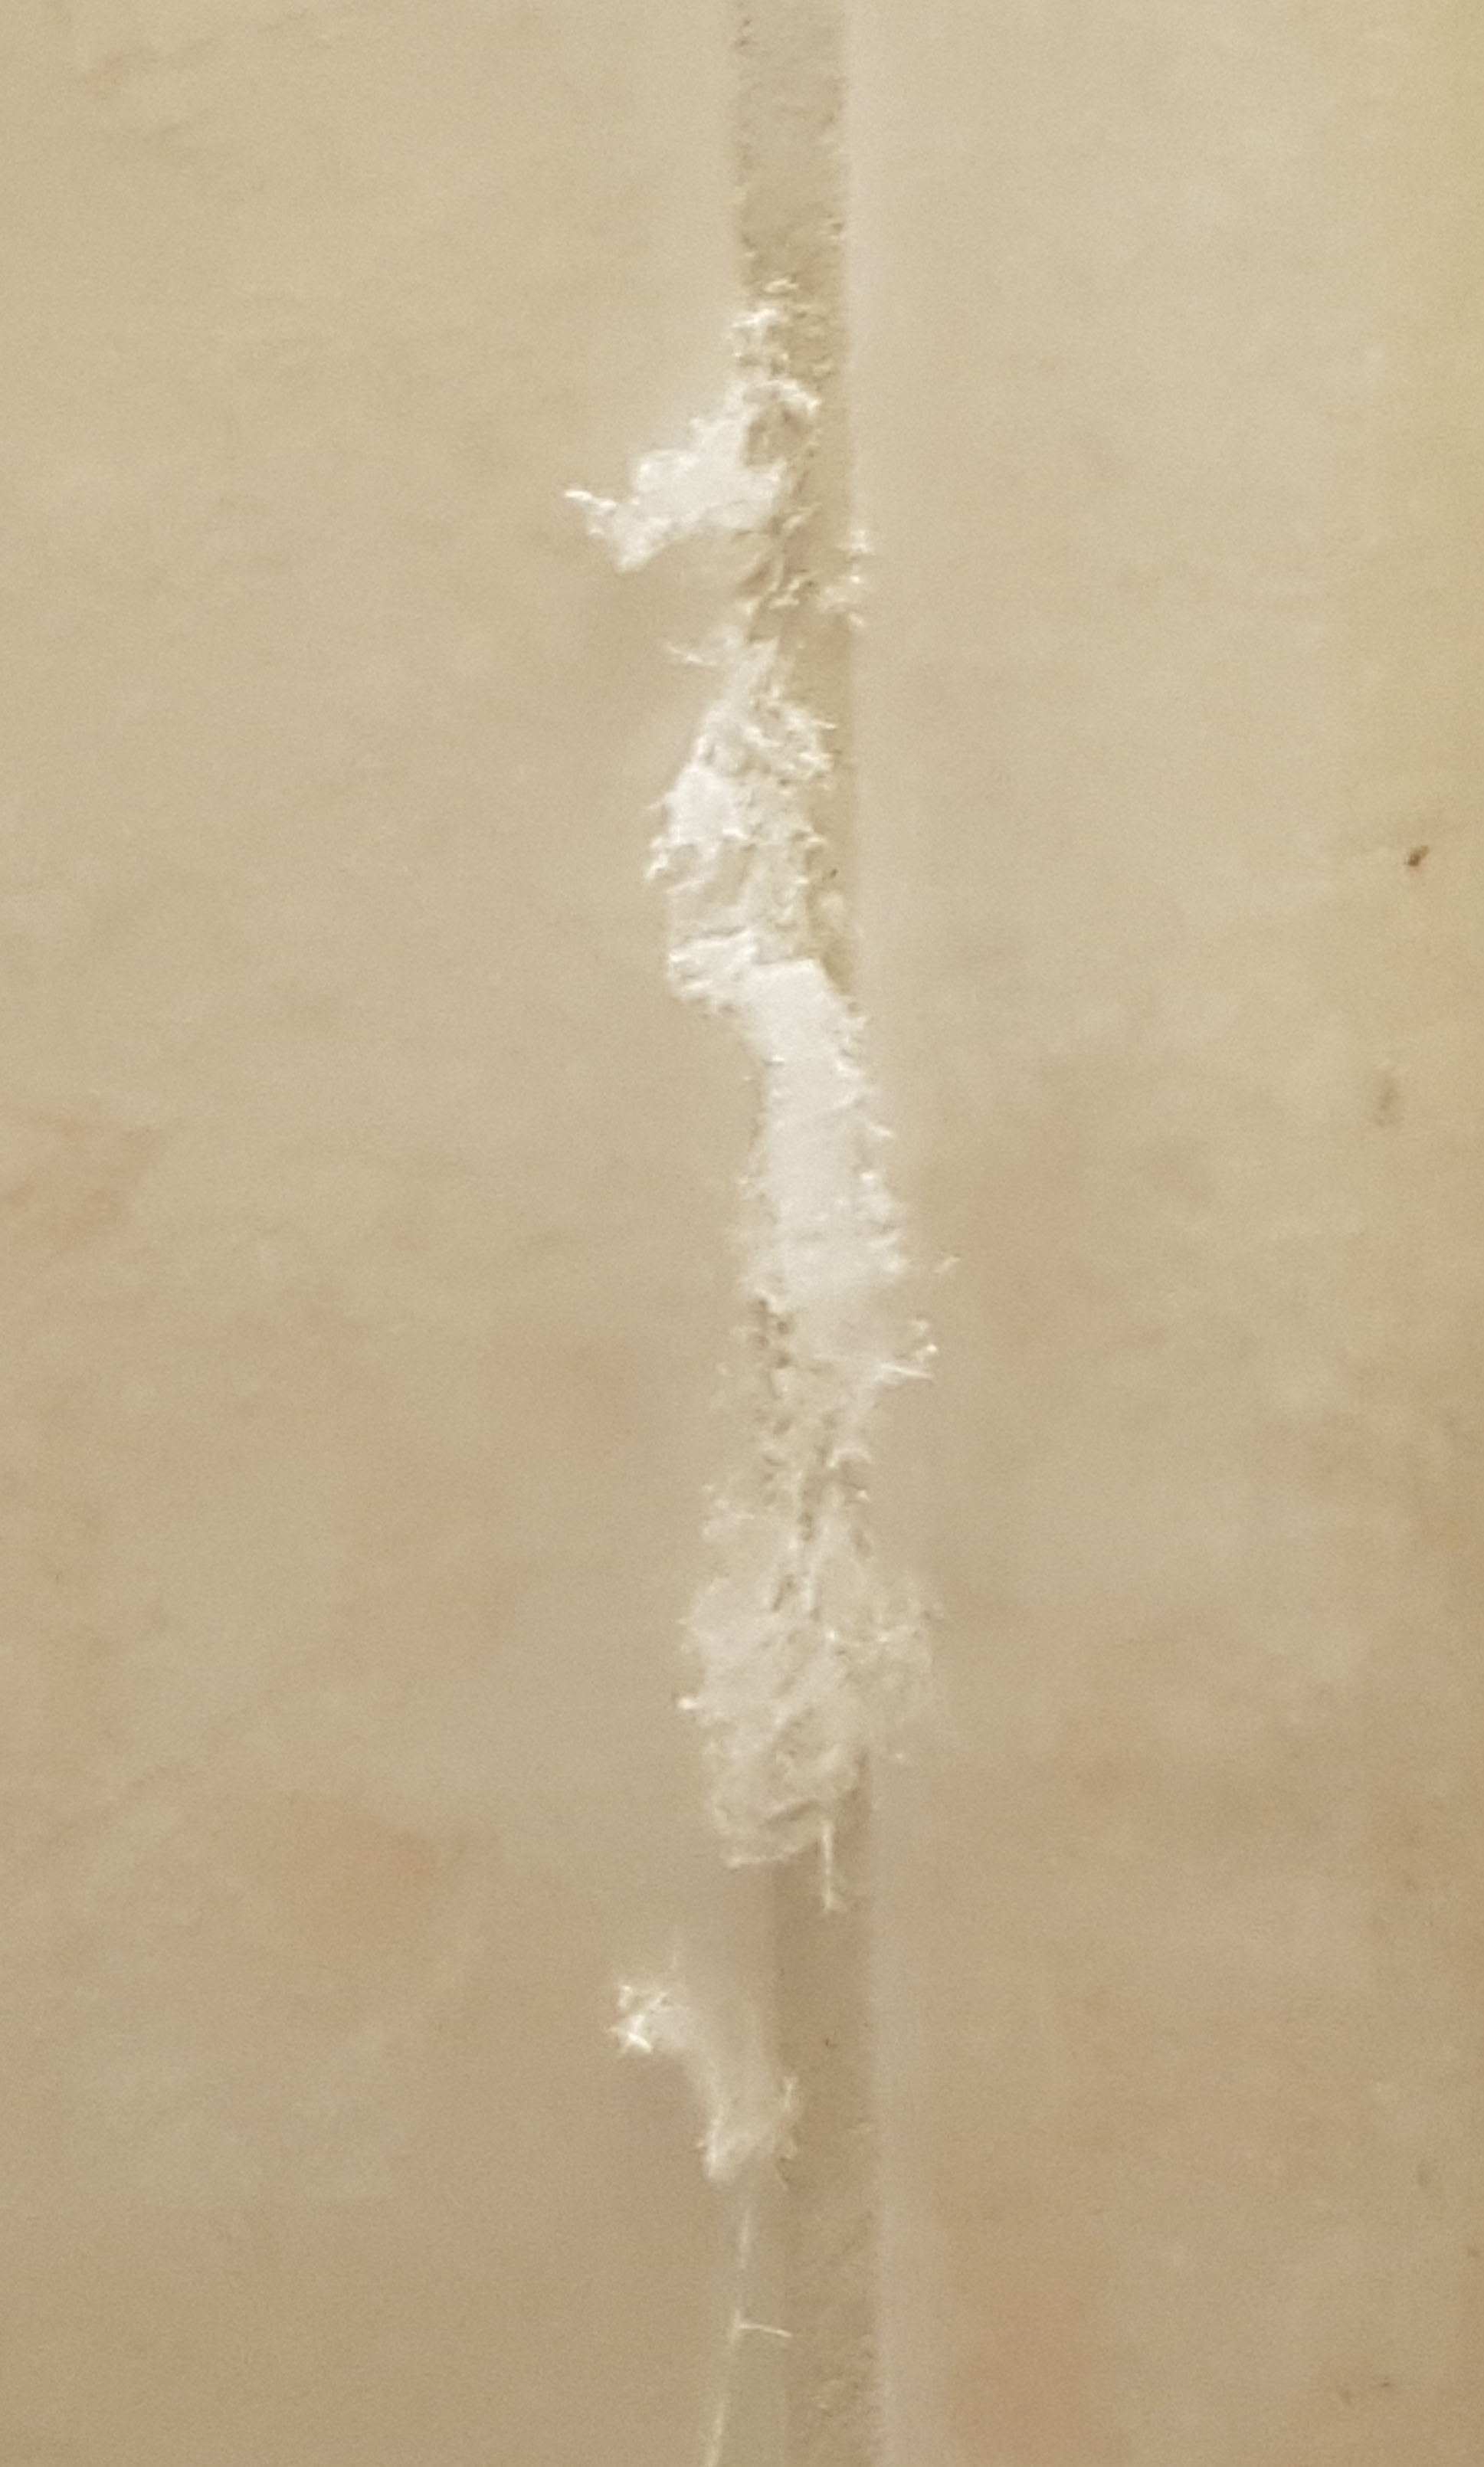 witte pluis op voegen in badkamer is dit schimmel of iets anders goeievraag